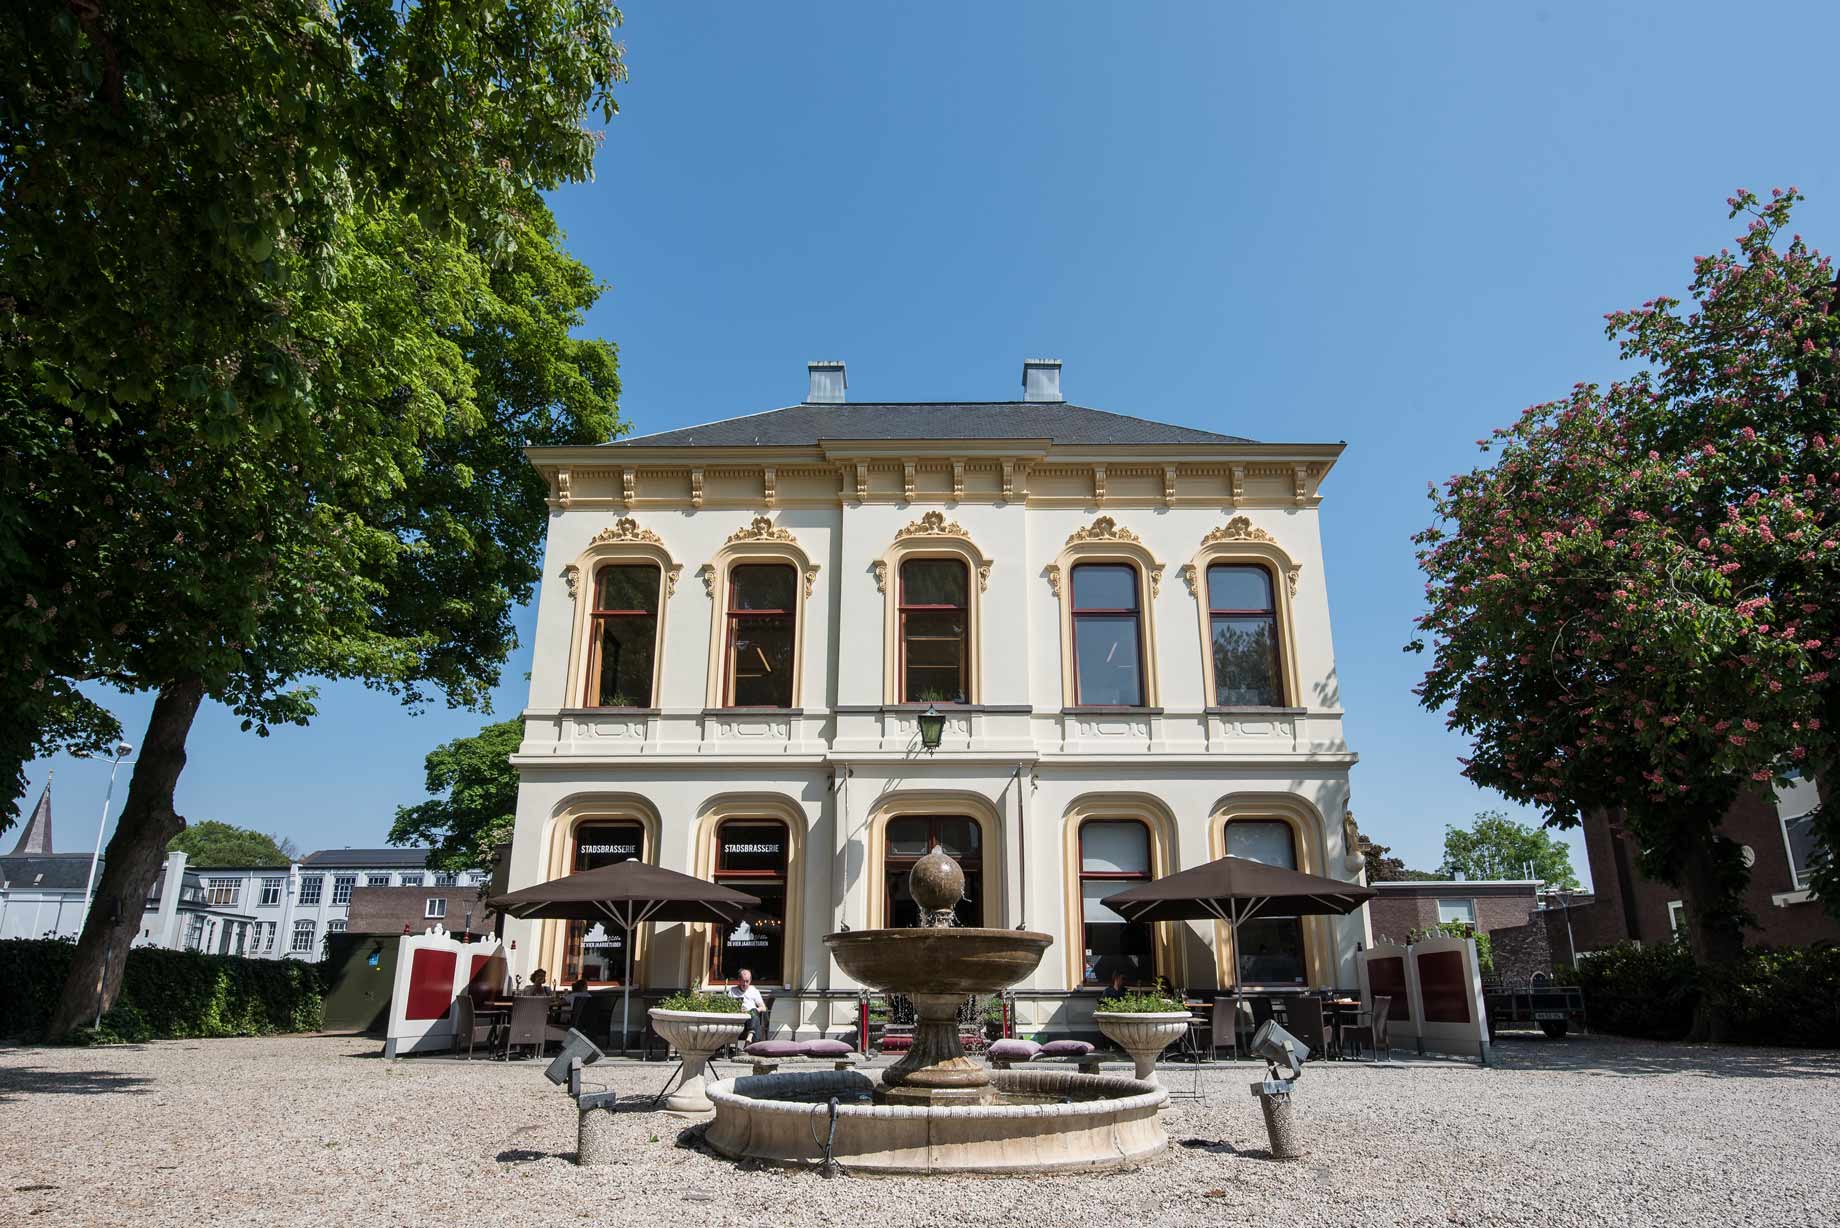 013 Straatjes - Villa de Vier Jaargetijden - Dwaalgebied Tilburg - Foto door William van der Voort